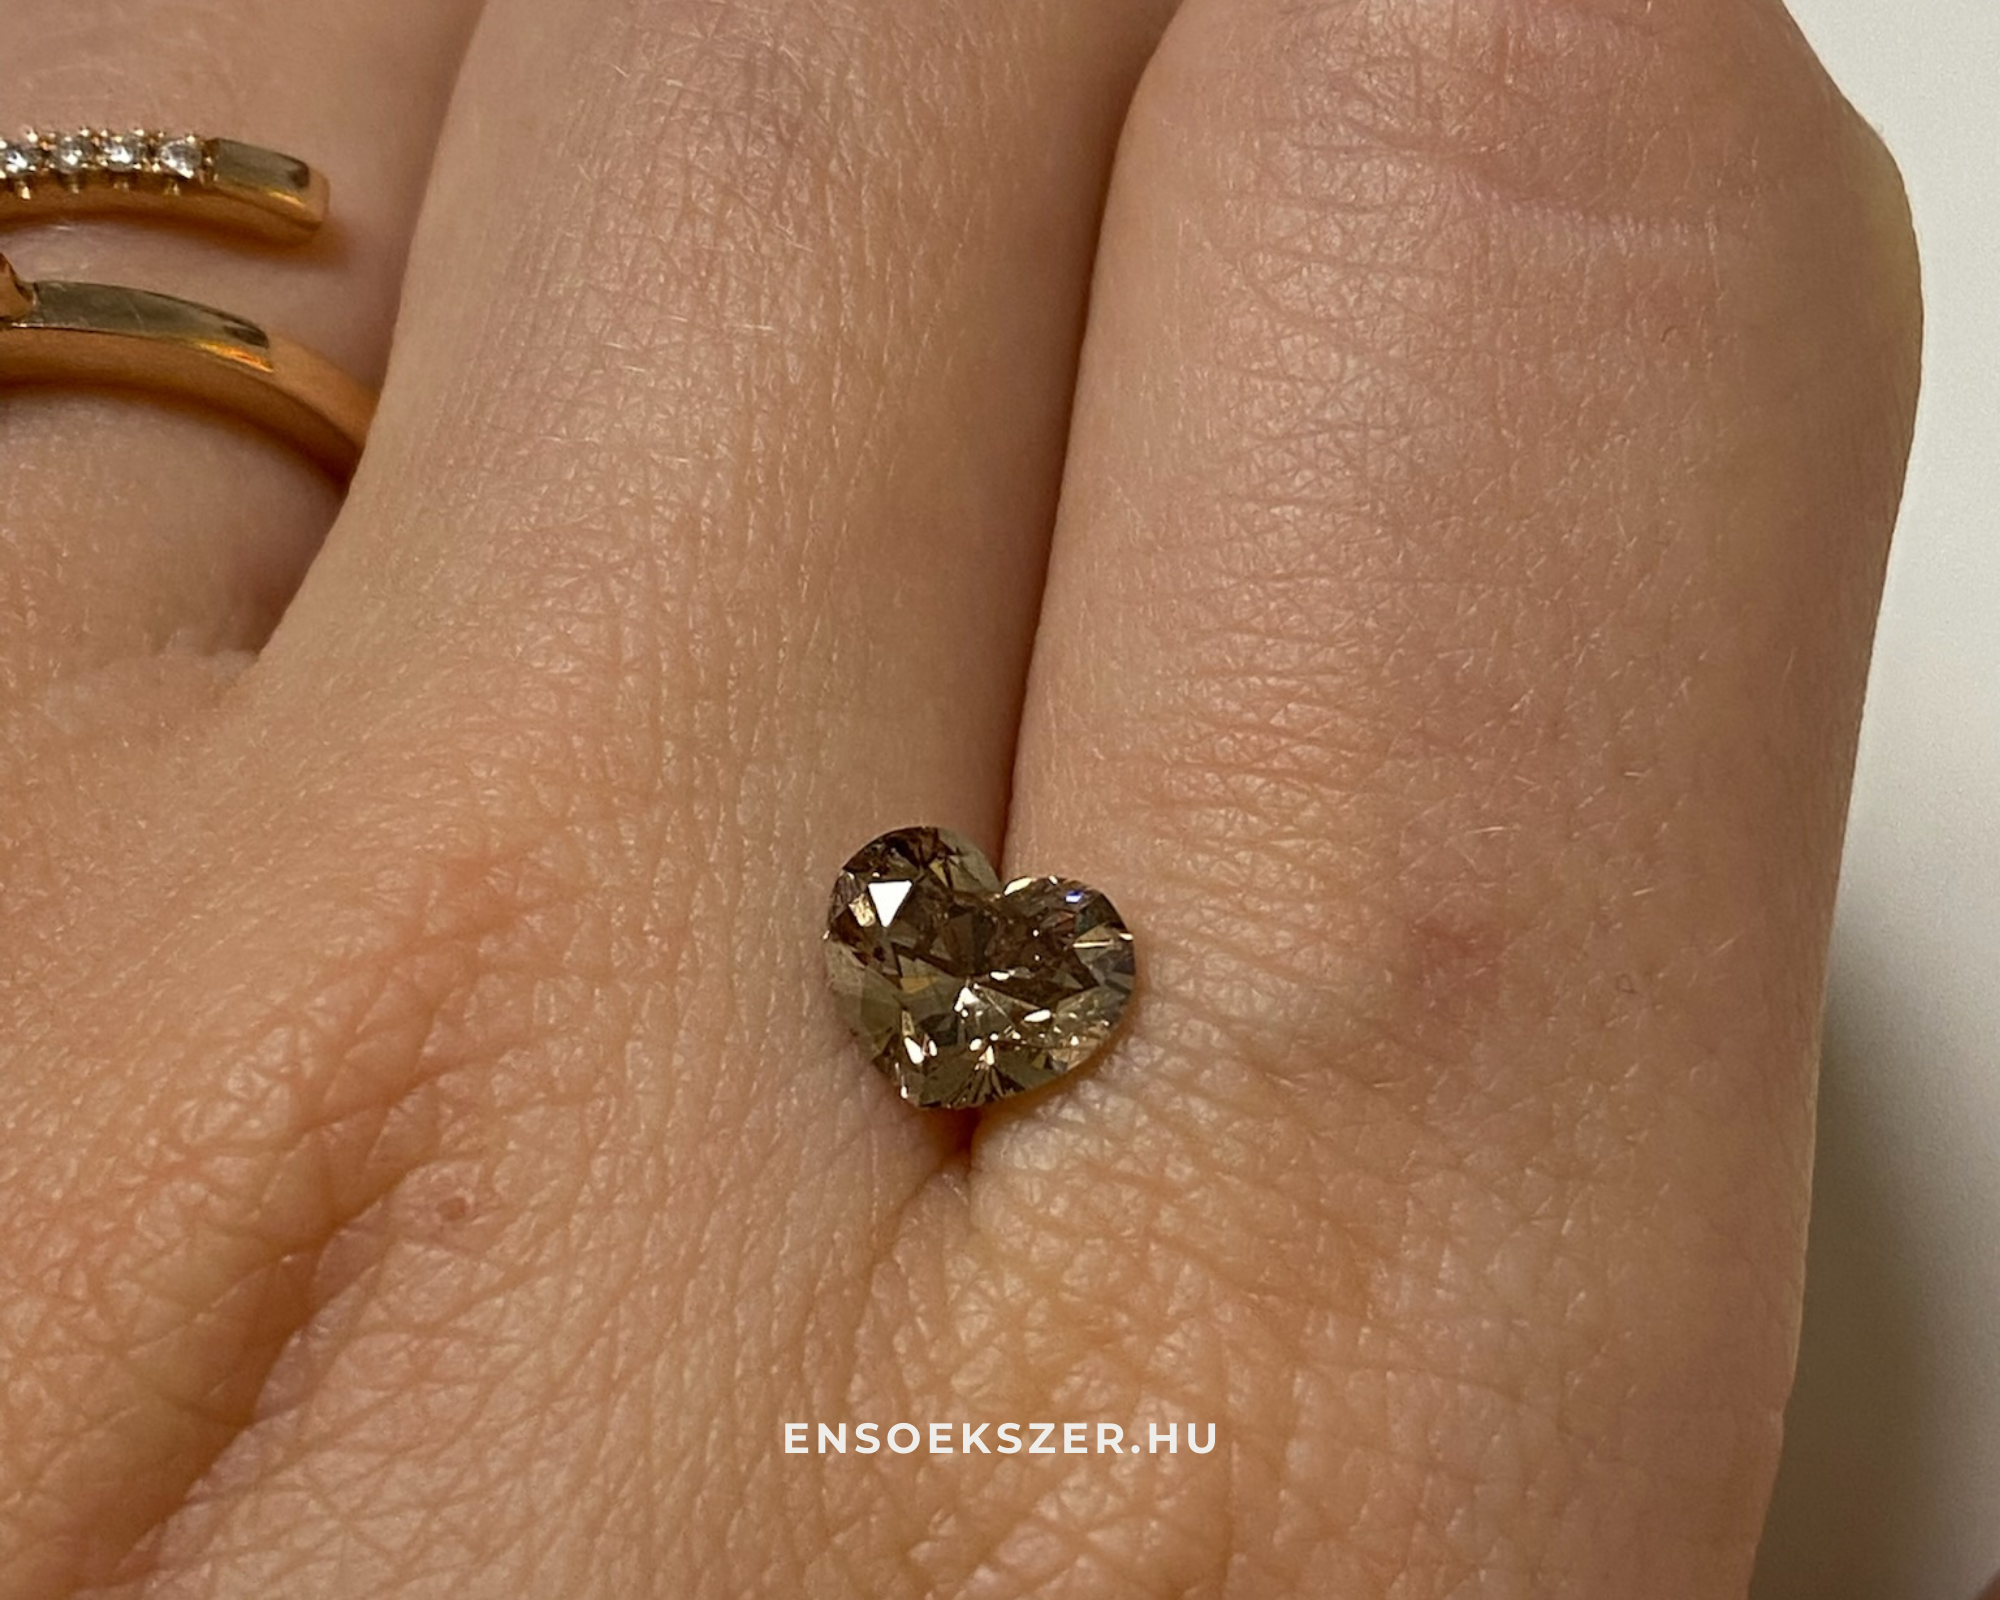 ENSO ékszer szív alakú barna gyémánt